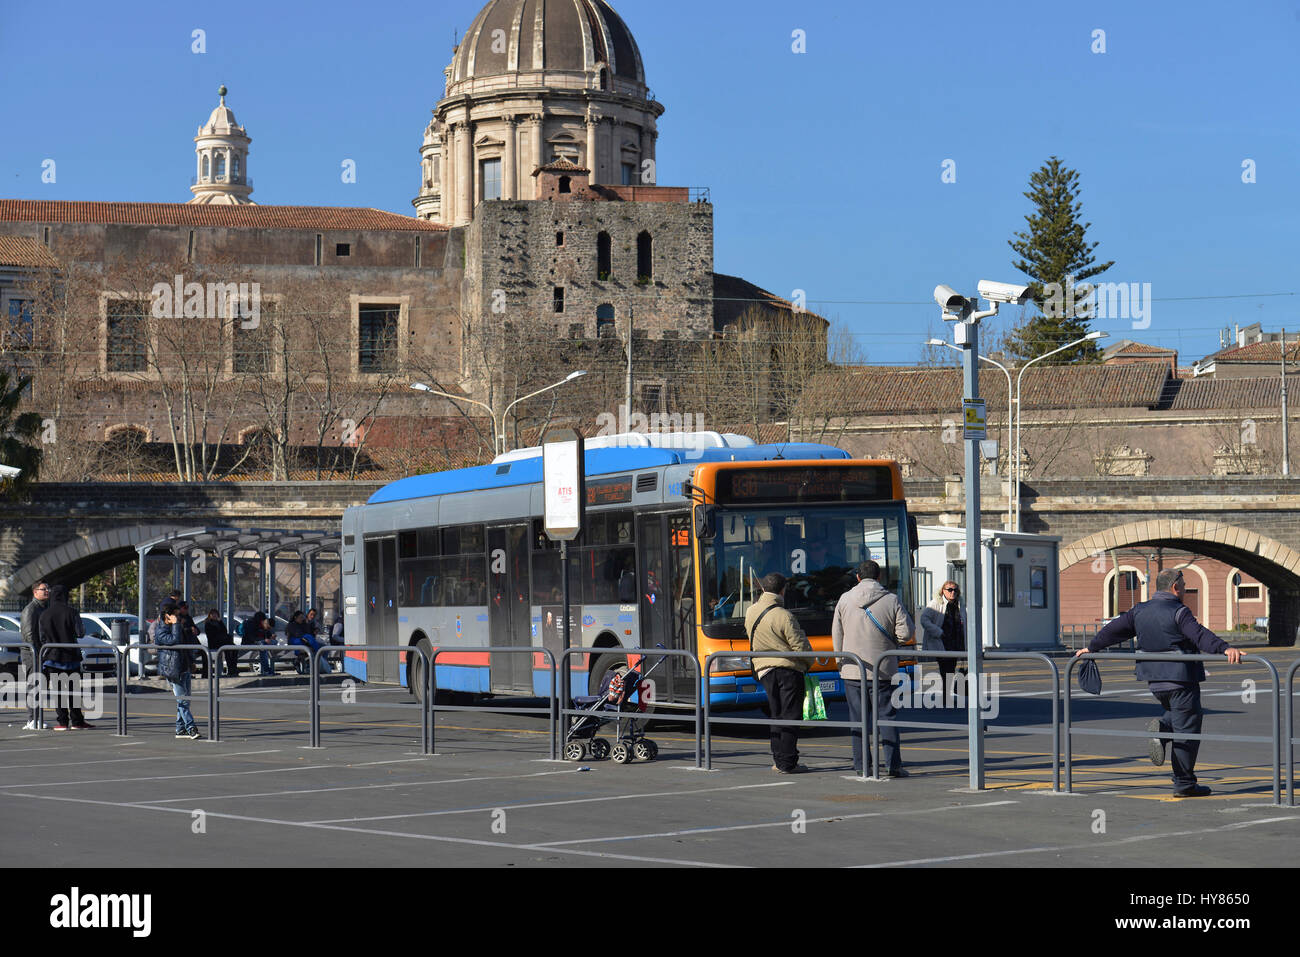 Stazione dei pullman, Piazza Paolo Borsellino, Catania, Sicilia, Italia, Busbahnhof, Sizilien, Italien Foto Stock